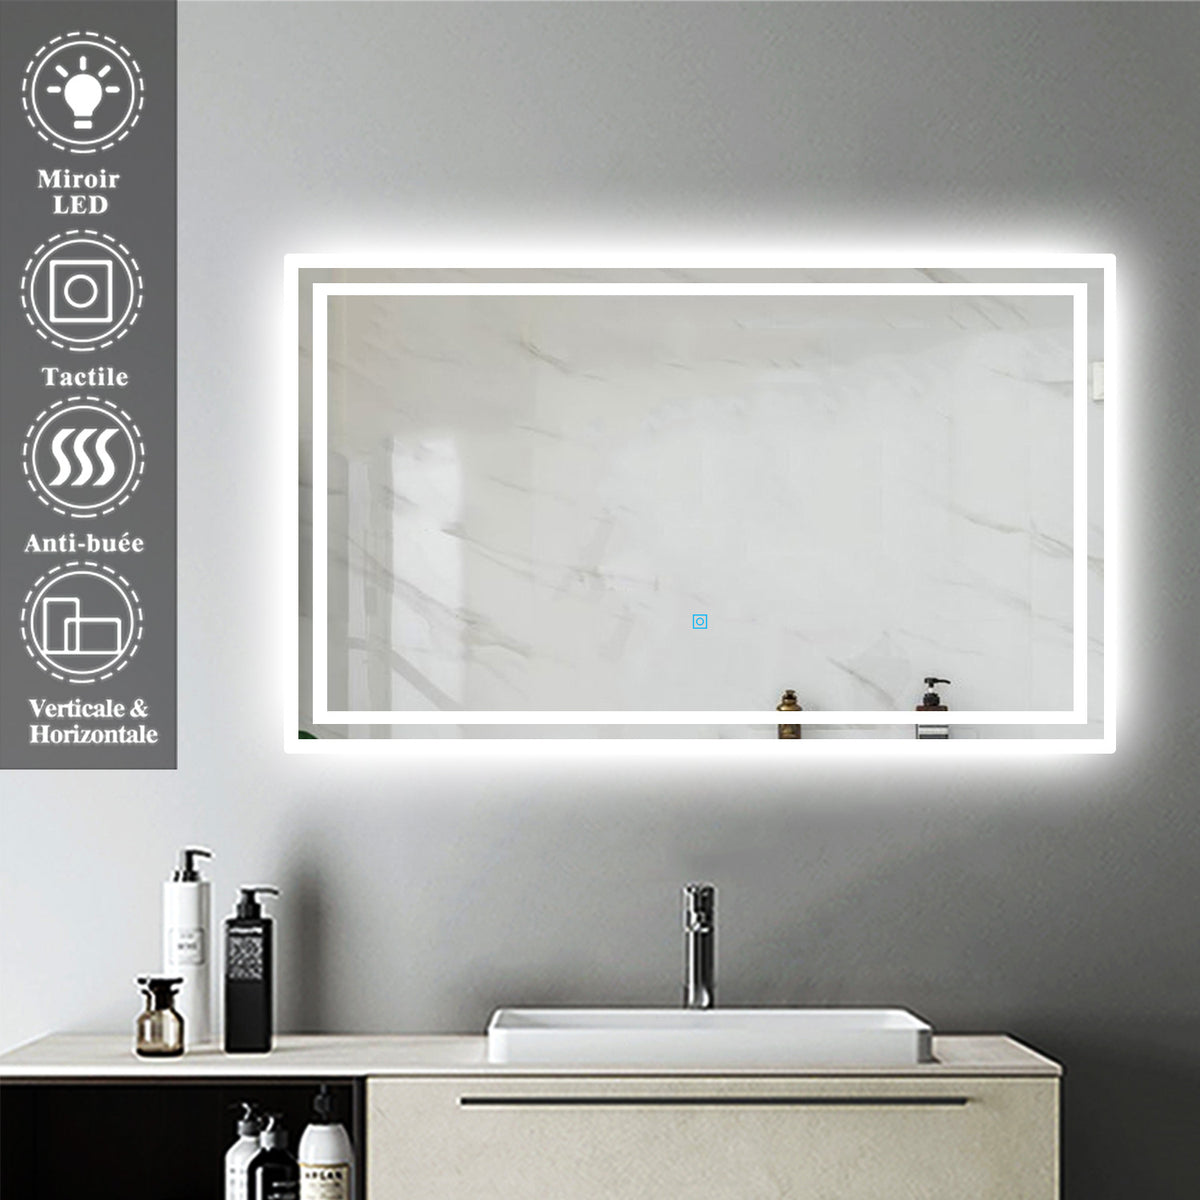 Miroir salle de bain avec éclairage frontal - 700x600 mm - Pegasus EMUCA